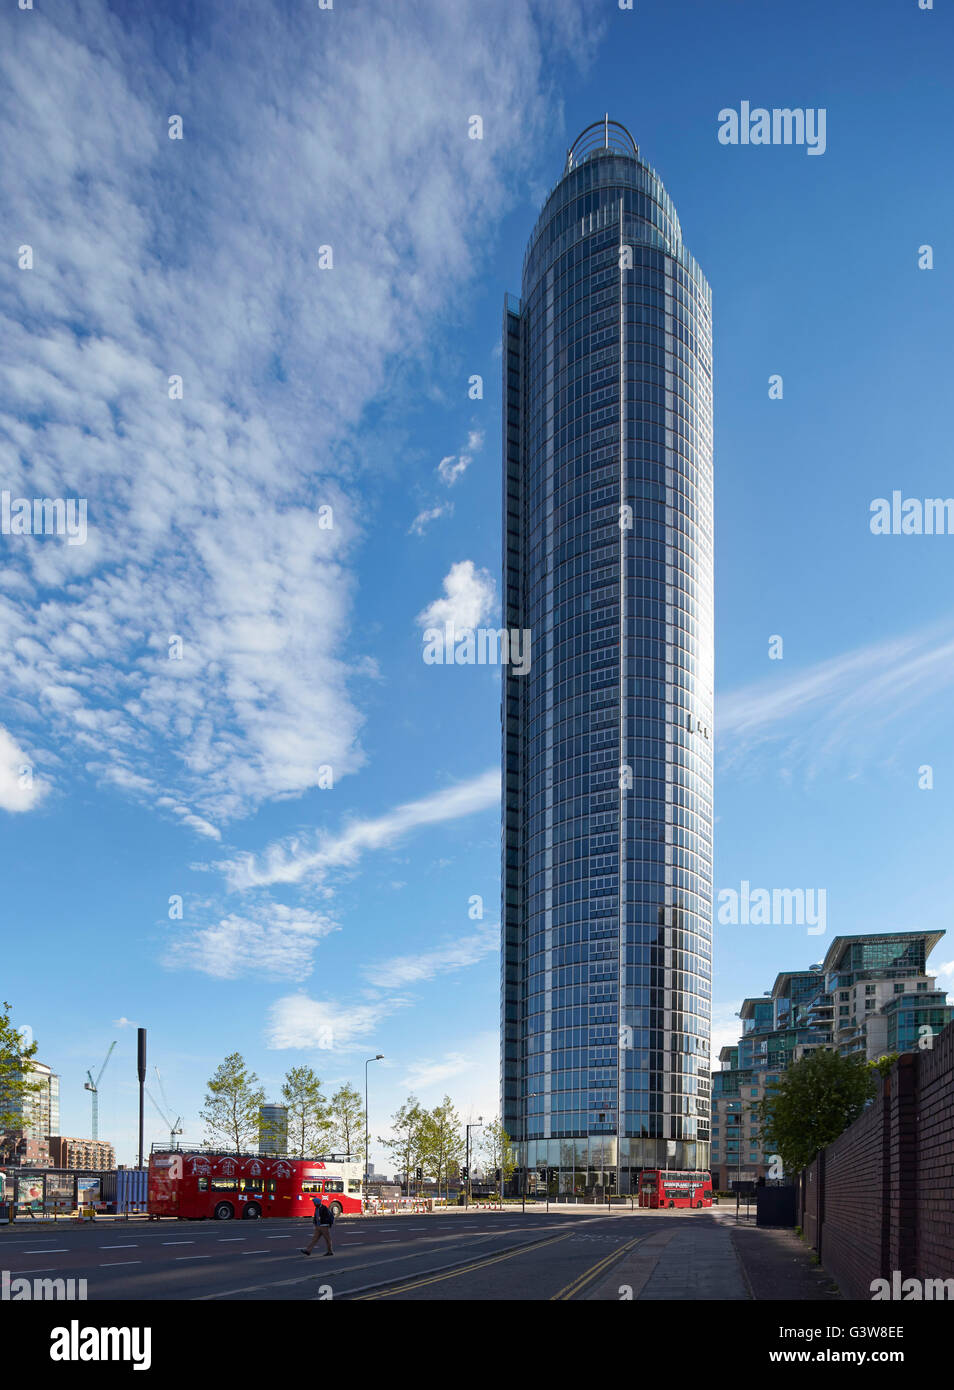 Le long de la rue en direction du haut-lieu et contexte. St George Wharf Tower, London, Royaume-Uni. Architecte : Broadway Malyan Limited, 2014. Banque D'Images